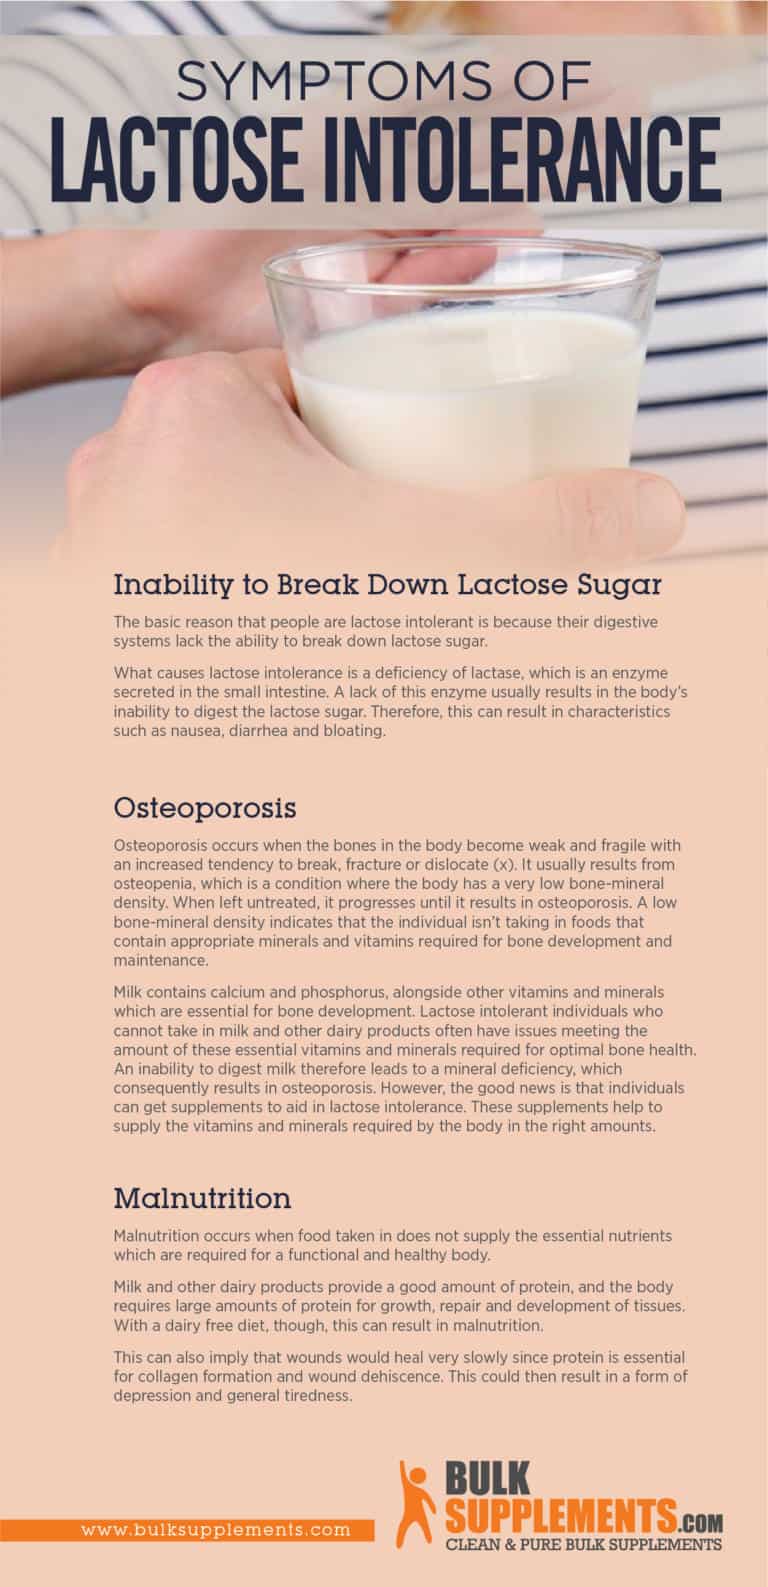 Lactose Intolerance: Symptoms, Causes & Treatment by James Denlinger